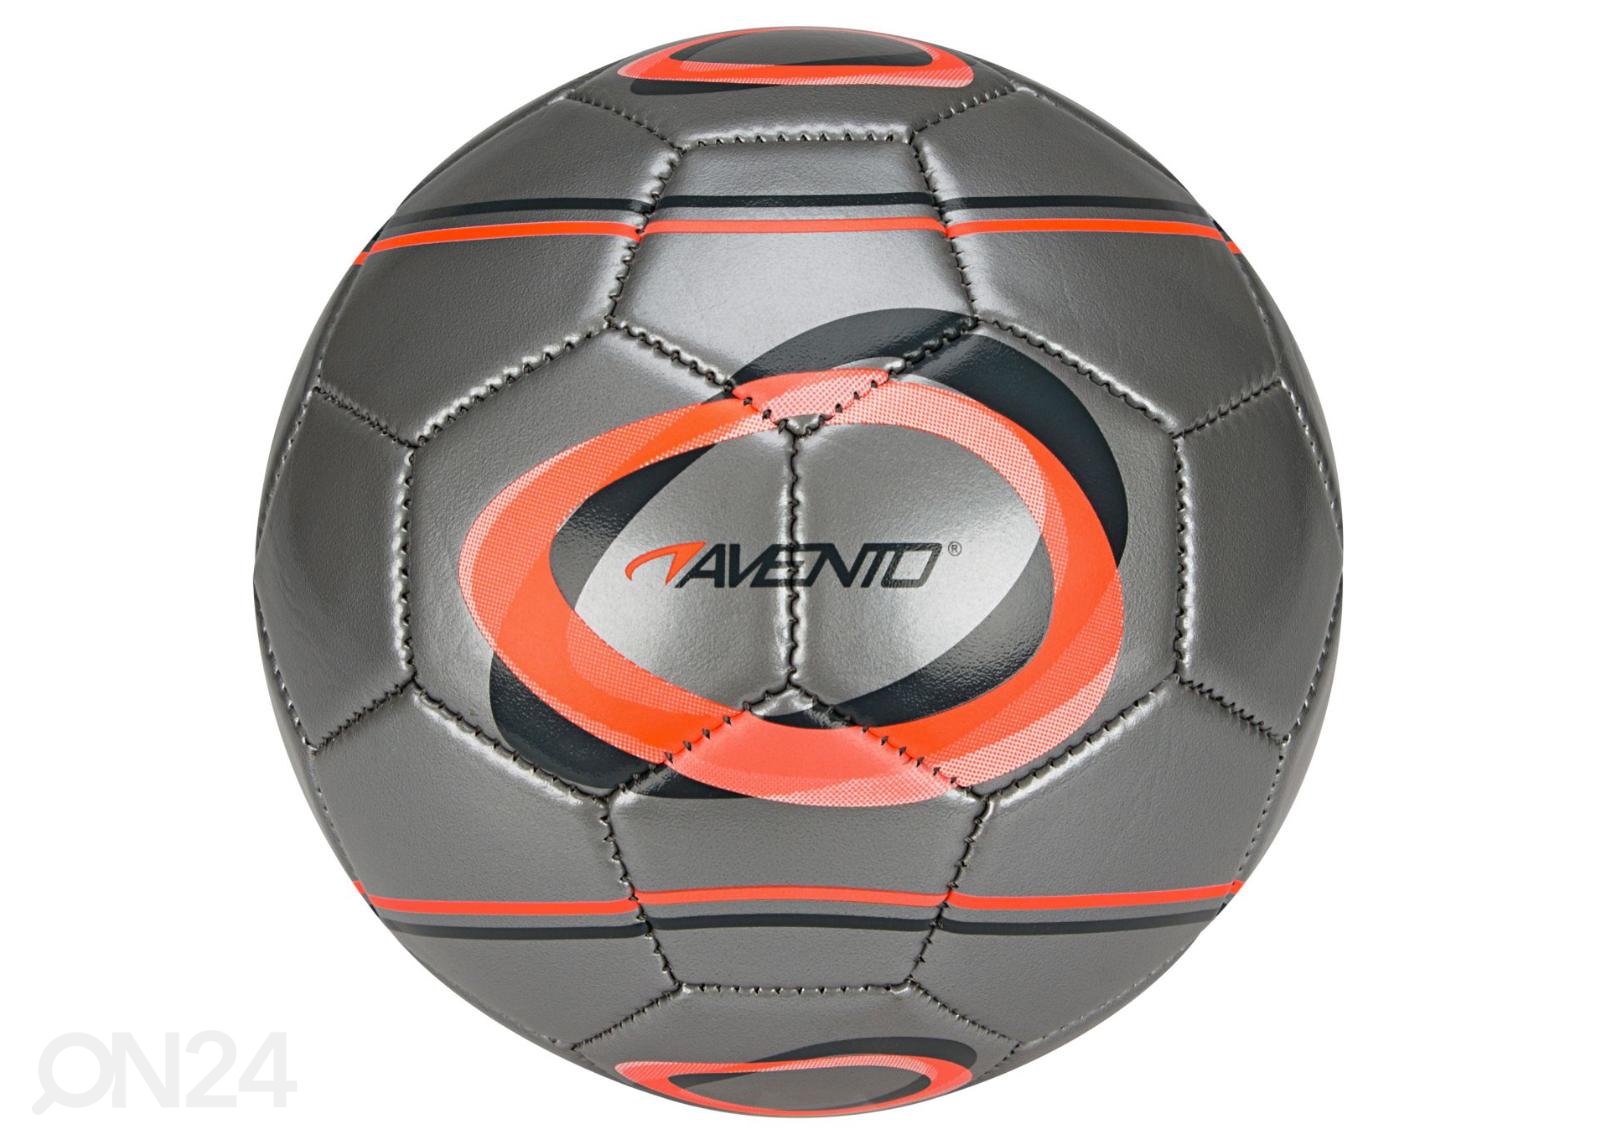 Jalgpall mini Elipse-2 Avento suurendatud